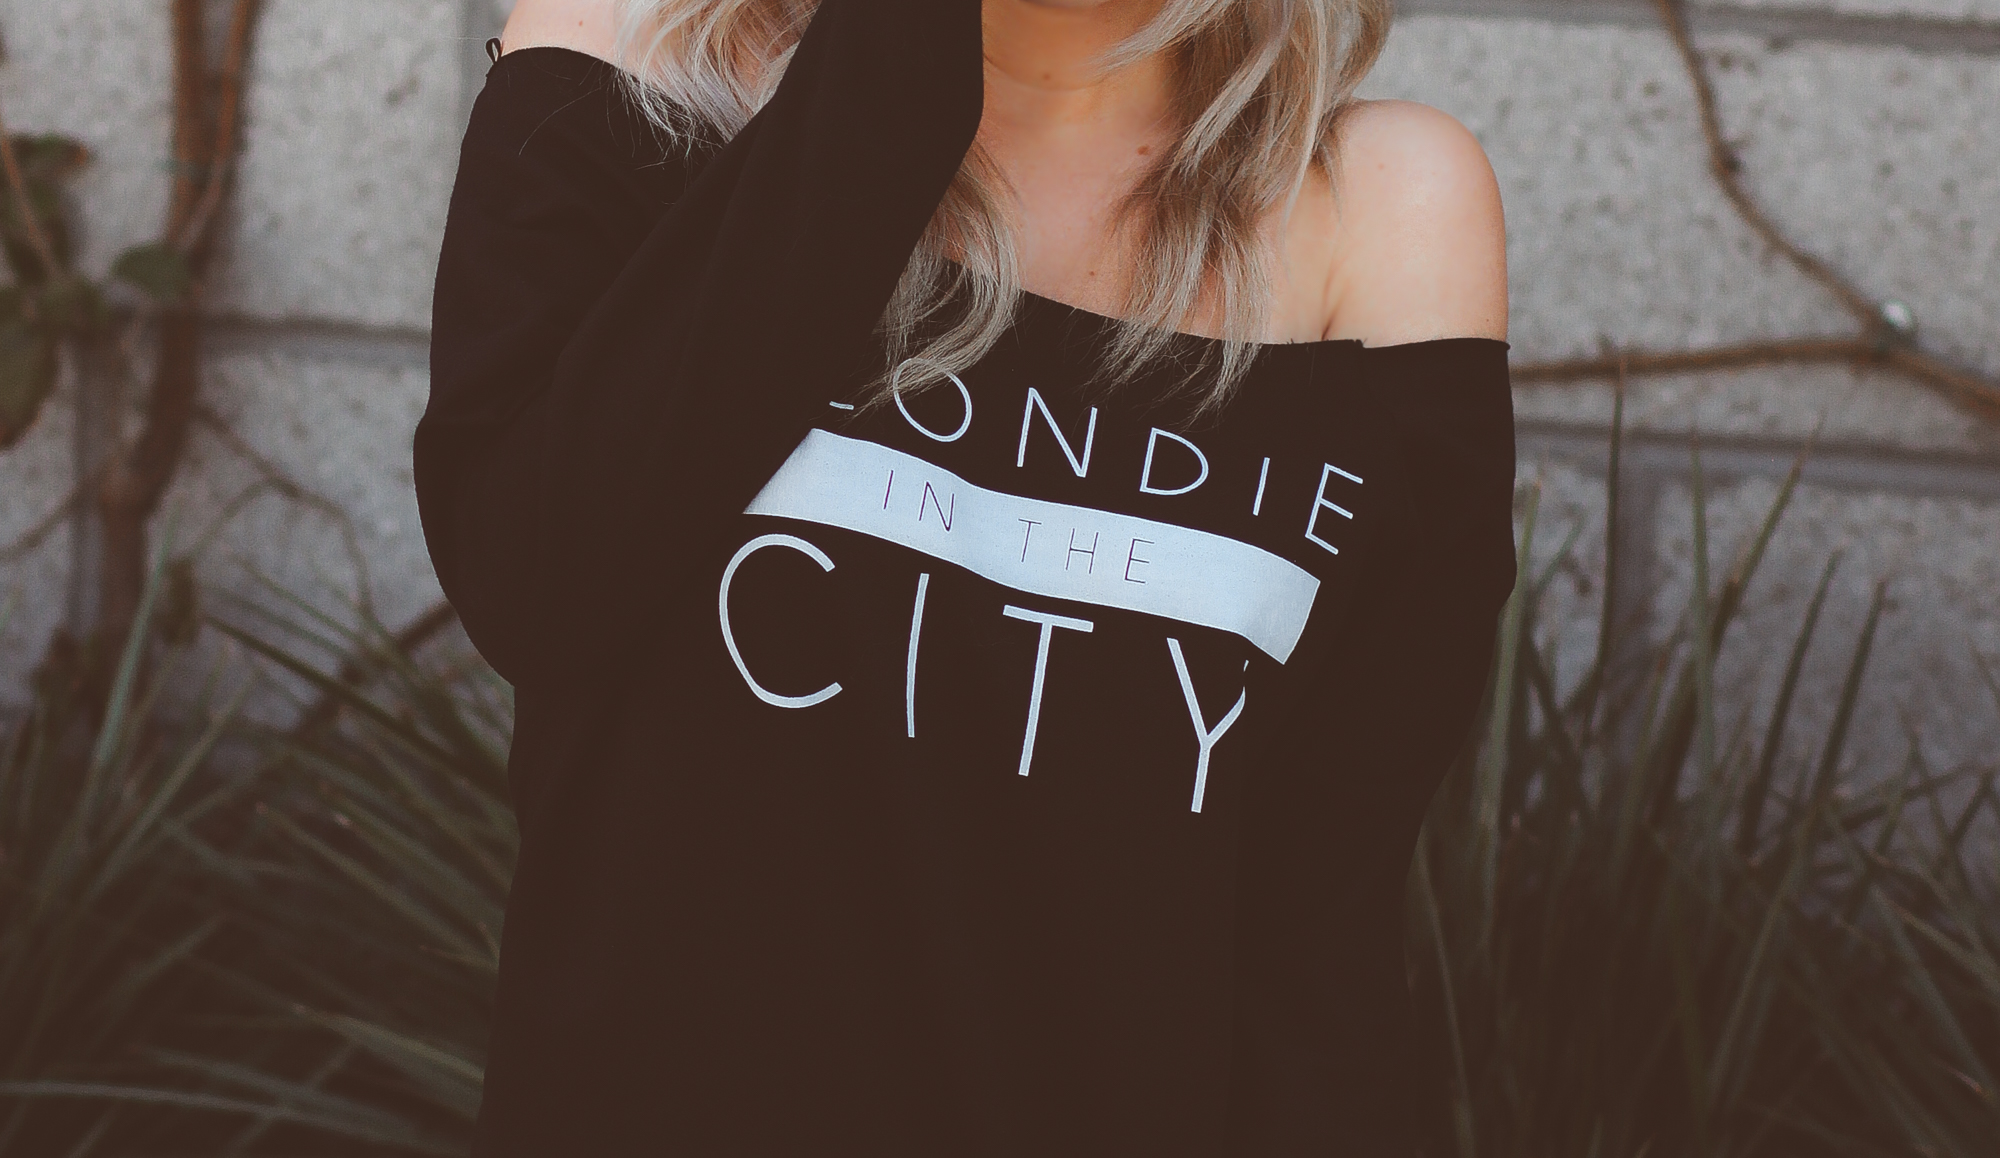 Blondie in the City | The Blondie in the City Collection